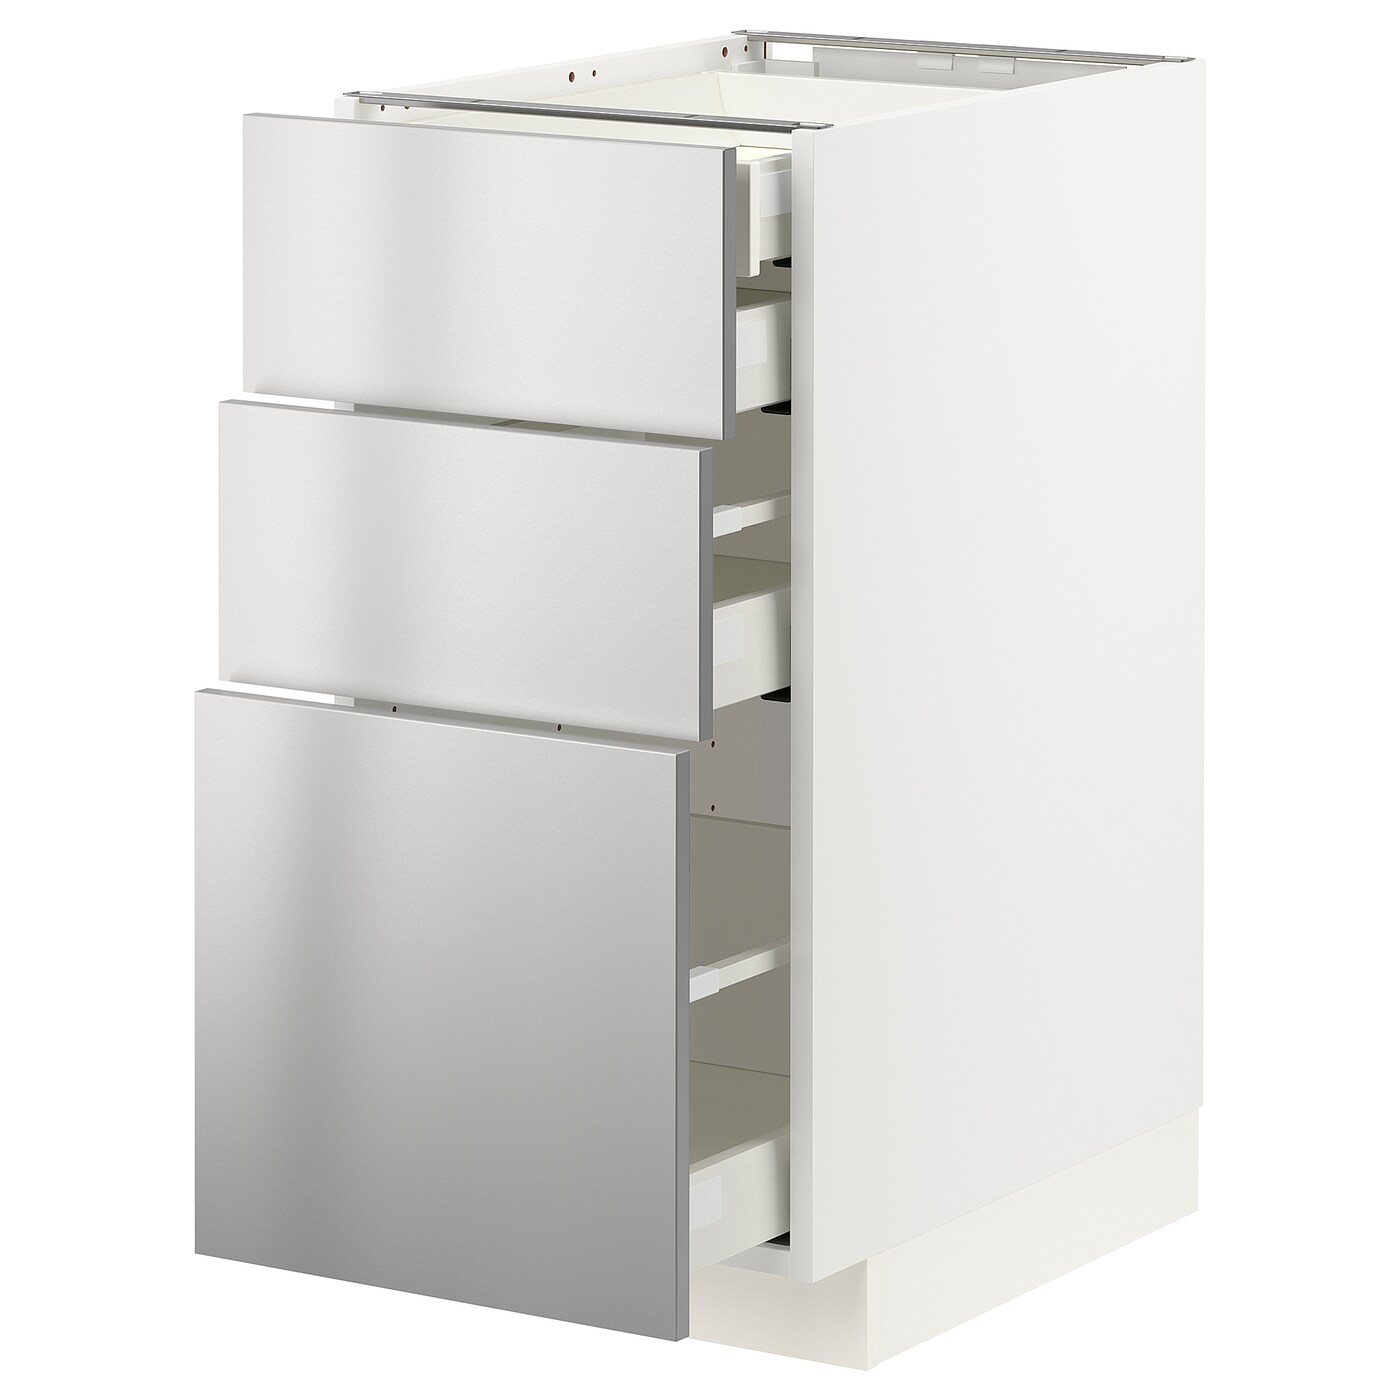 Напольный шкаф  - IKEA METOD MAXIMERA, 88x61,6x40см, белый/светло-серый, МЕТОД МАКСИМЕРА ИКЕА